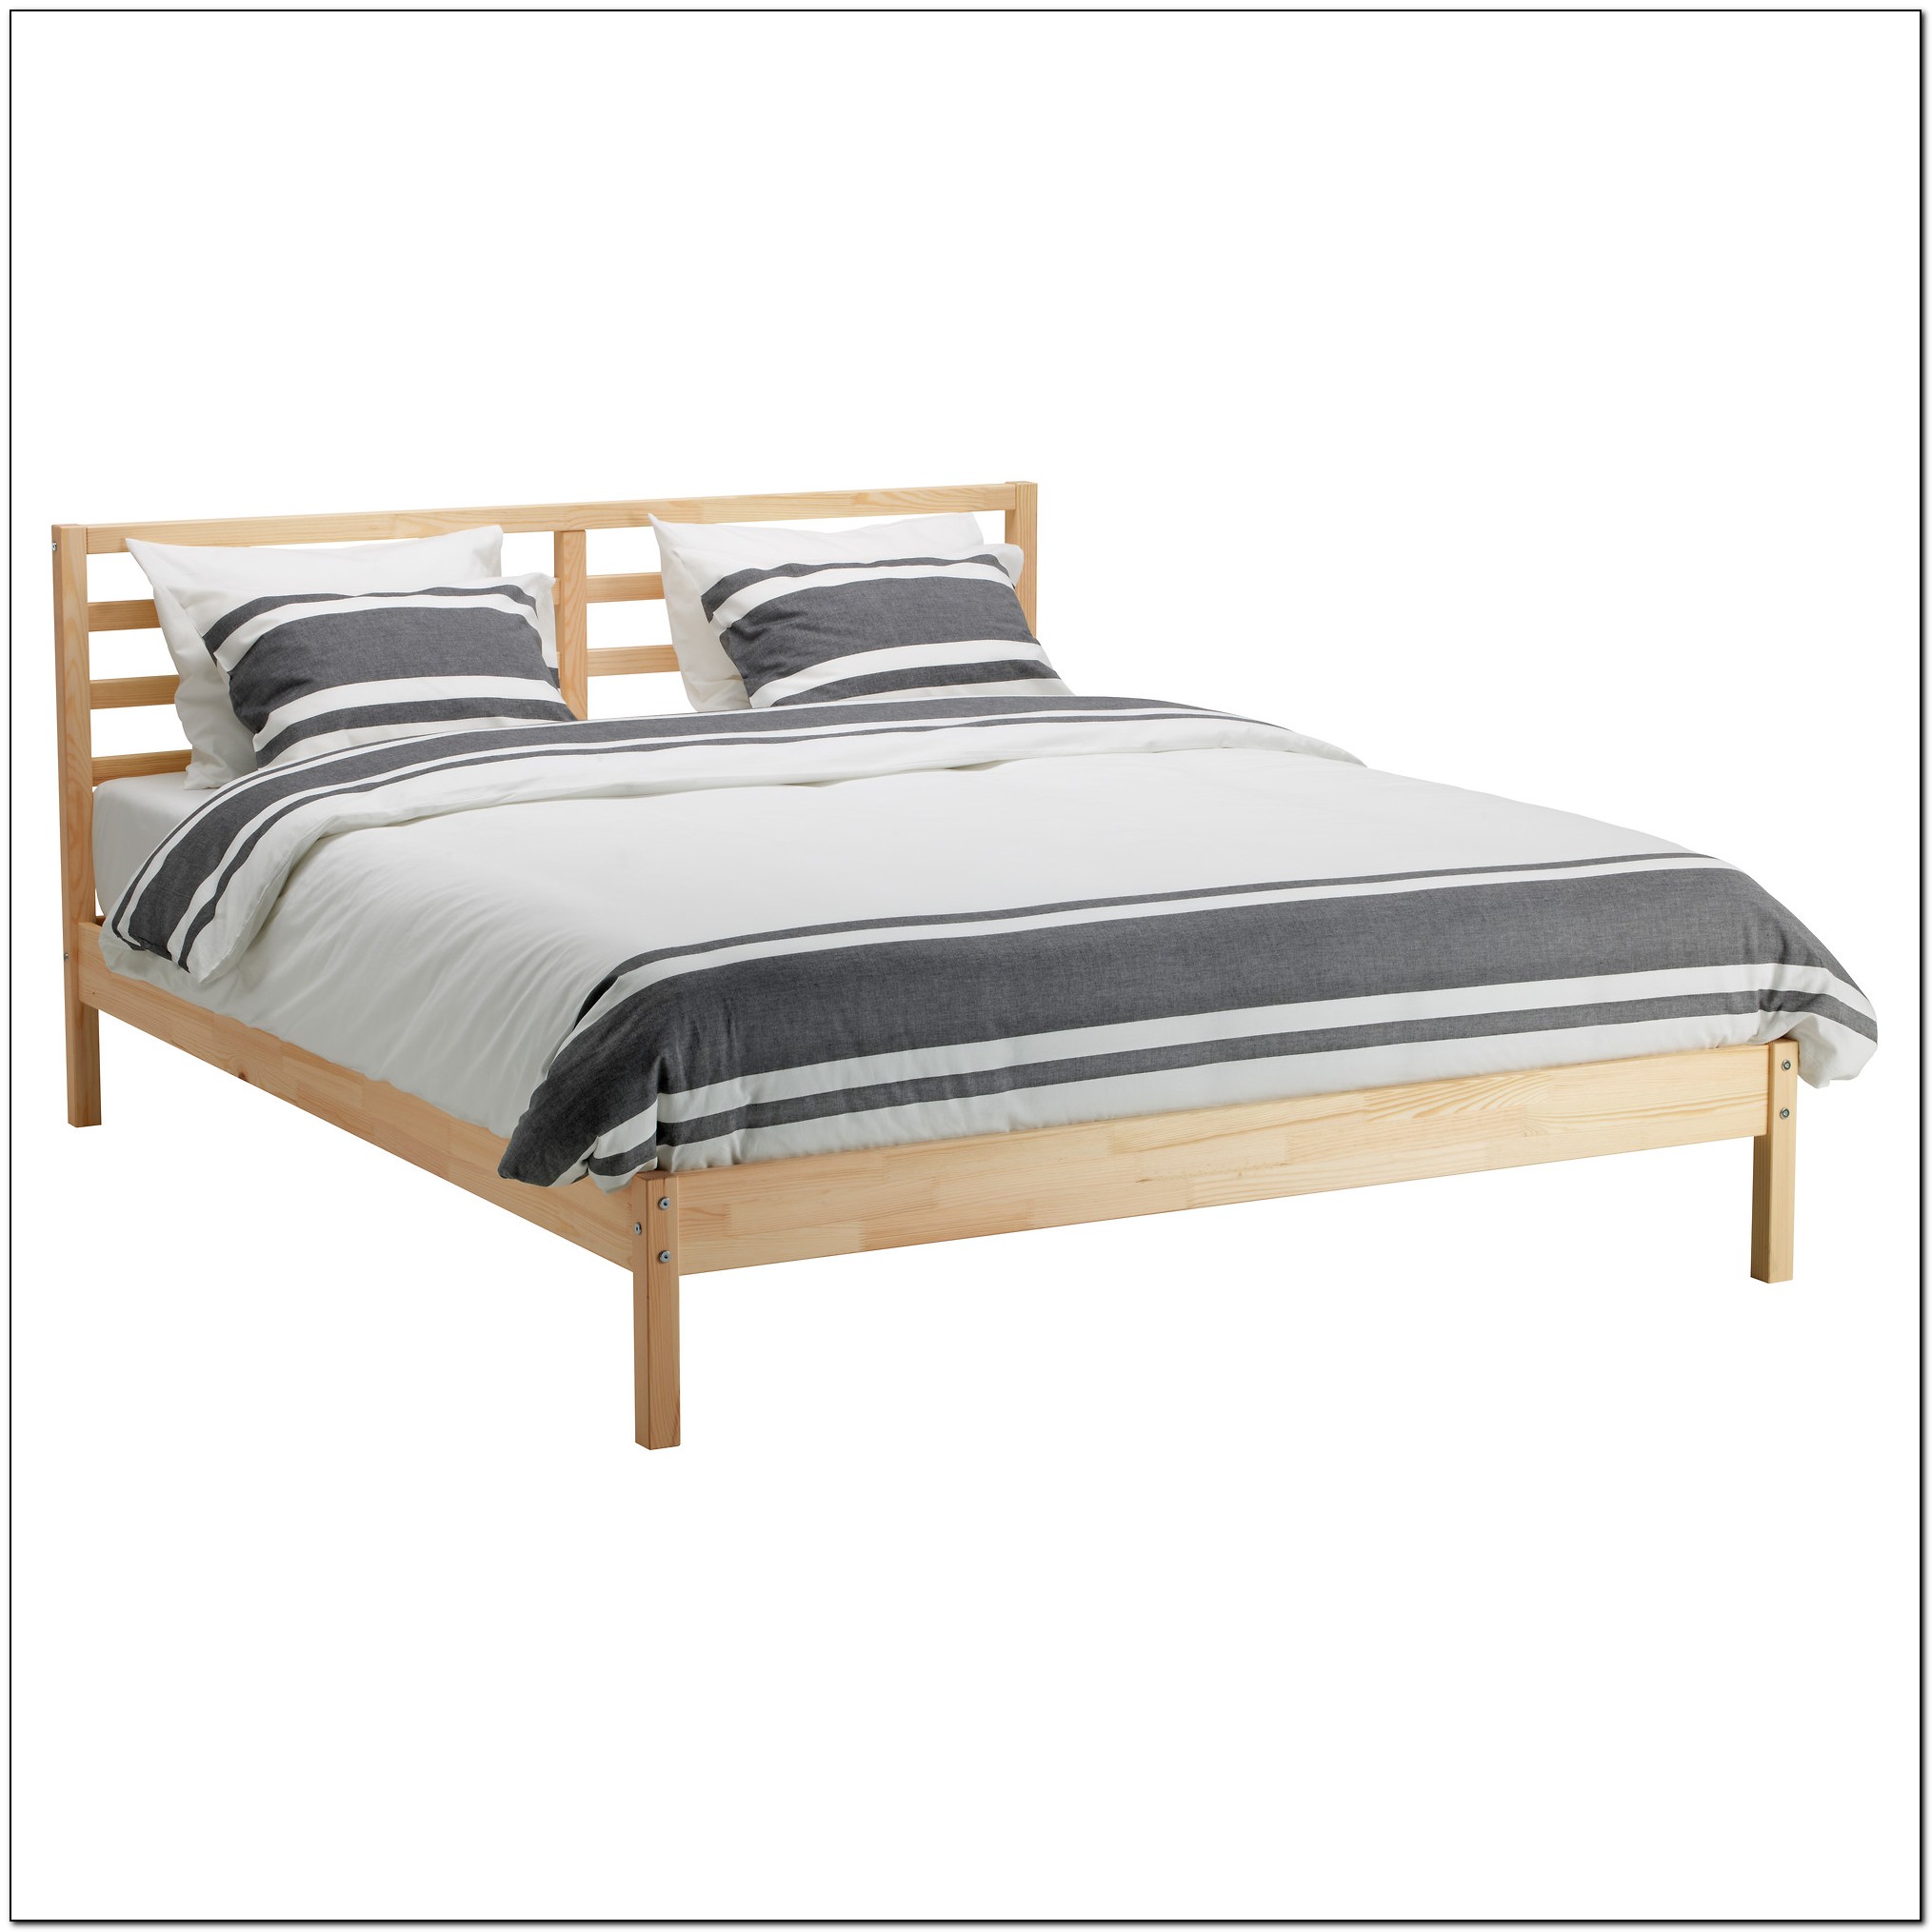 Ikea Queen Bed Frames